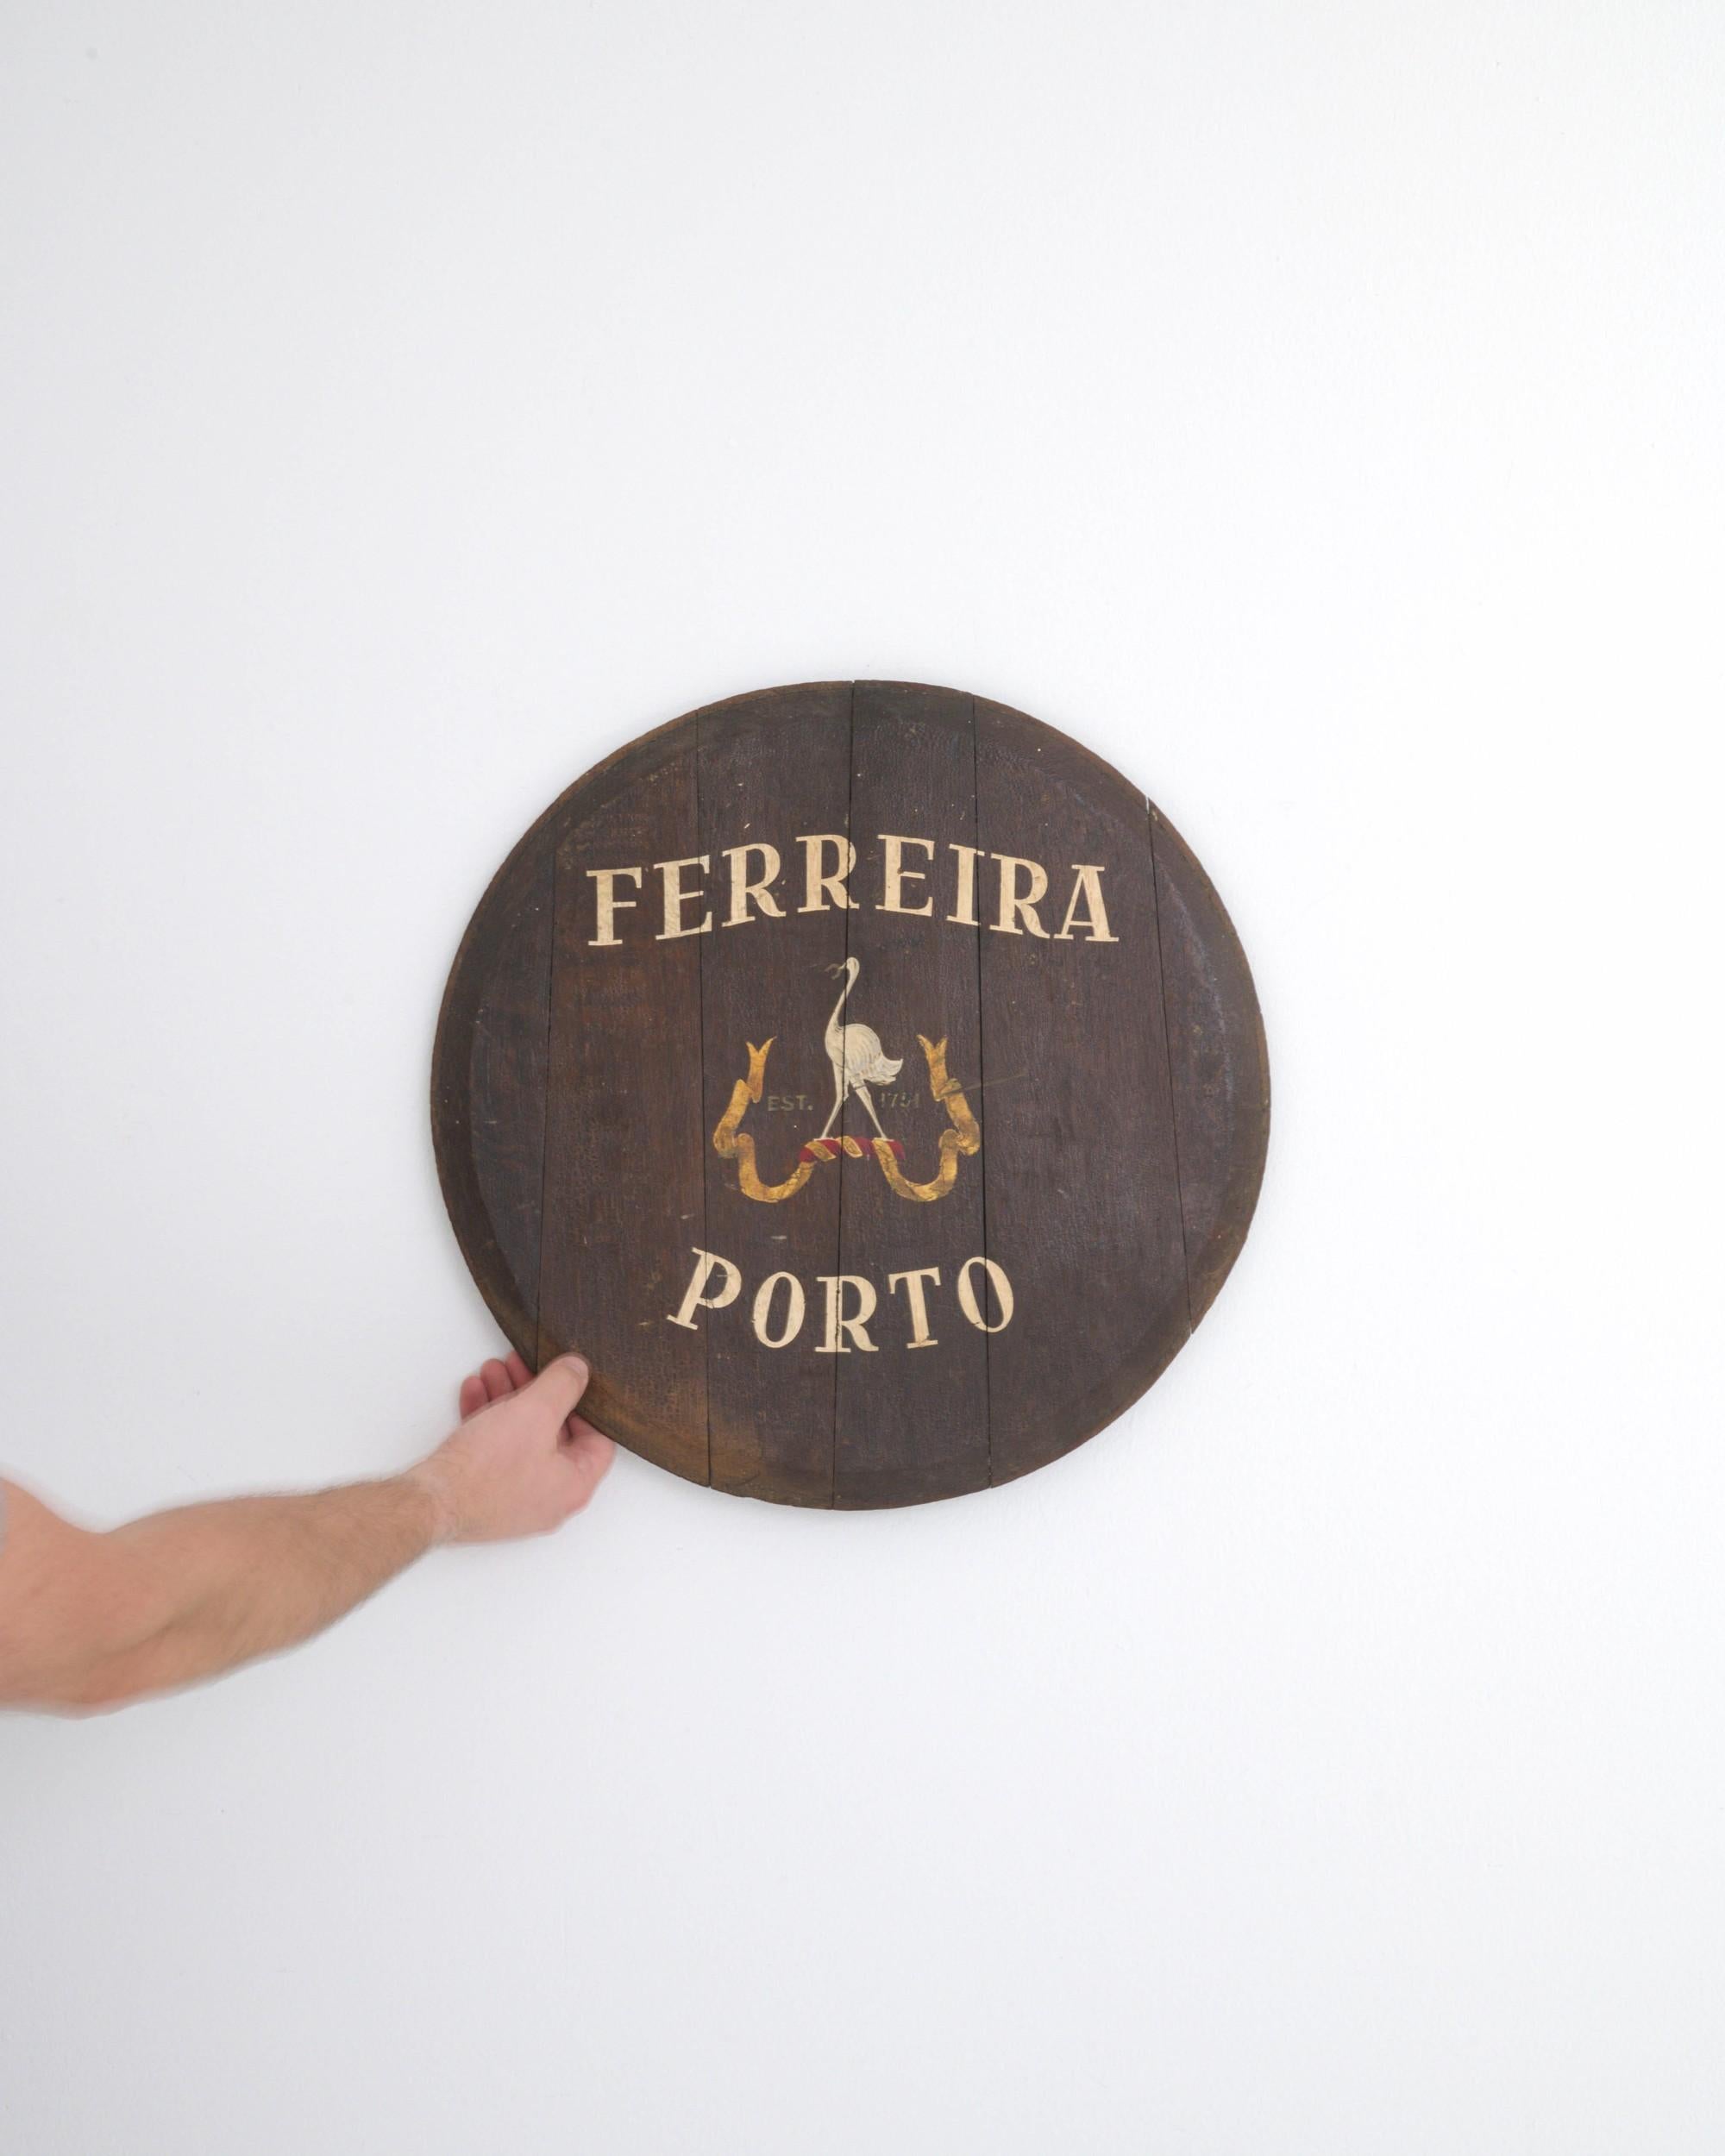 Diese authentische Wanddekoration aus Holz, ein Fassdeckel, stammt aus dem 20. Jahrhundert und ist eine Vintage-Rarität aus Portugal. Es zeigt einen gemalten Reiher mit einem Hufeisen im Schnabel auf einem gelb-roten Band, das die Jahreszahl 1751